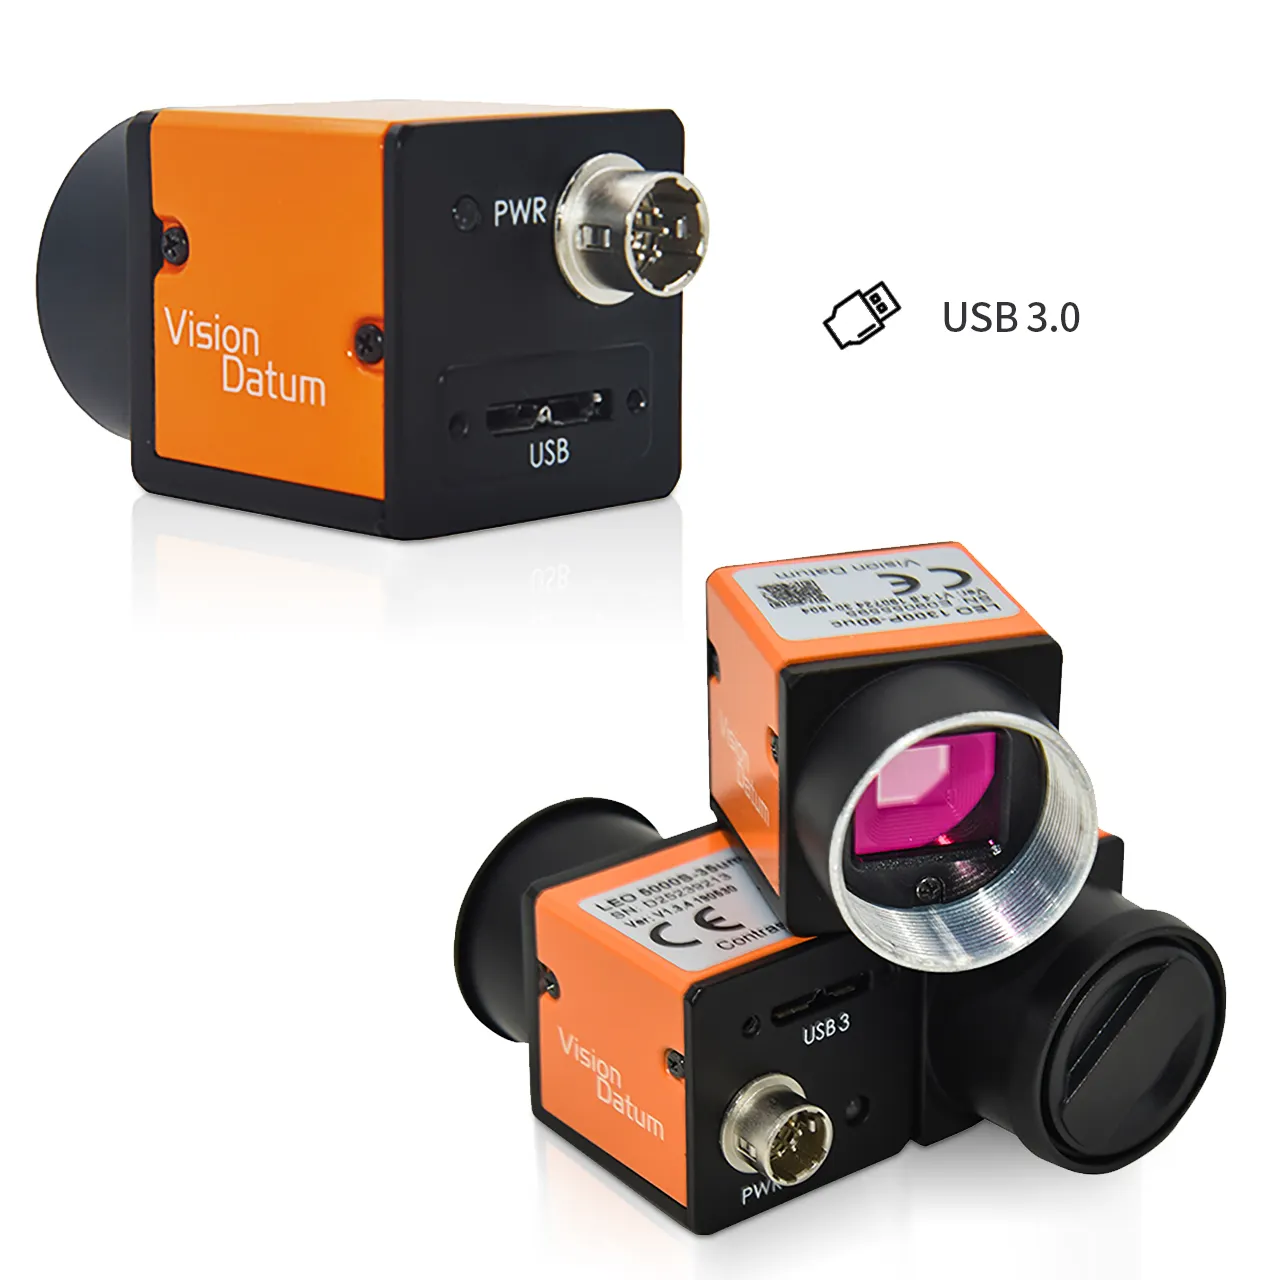 قاعدة الرؤية LEO 720S-520um/uc معدل إطار عالي الحركة البطيئة 520fps SONY IMX287 USB3.0 كاميرا ستيريو رؤية لفحص الزجاجة